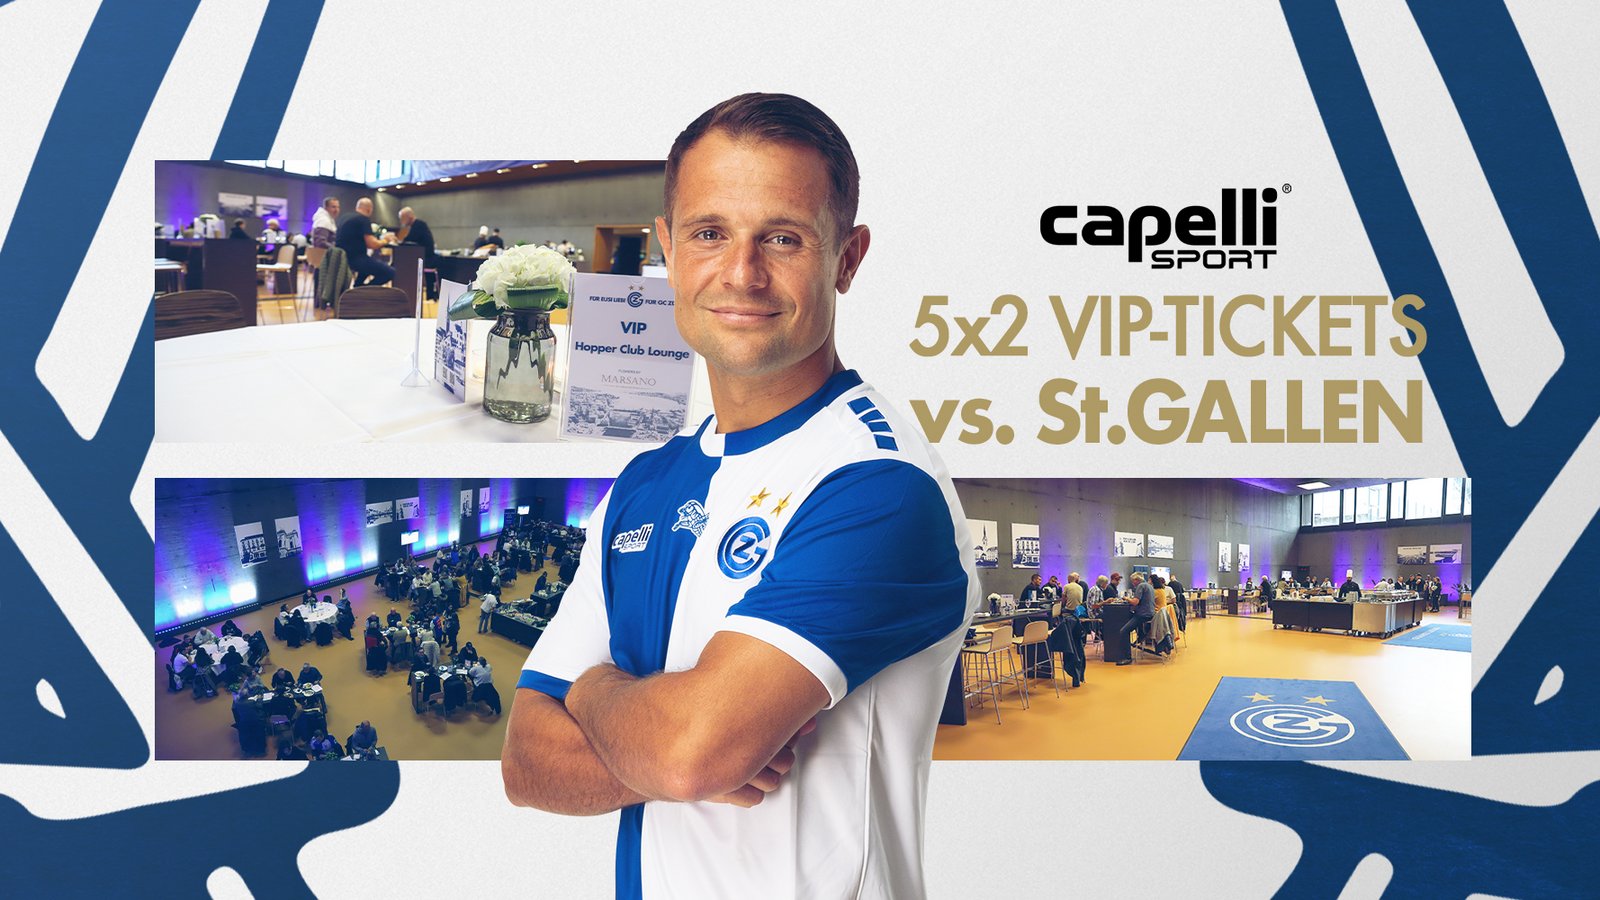 GEWINNSPIEL | 5x2 VIP-TICKETS VS. ST.GALLEN